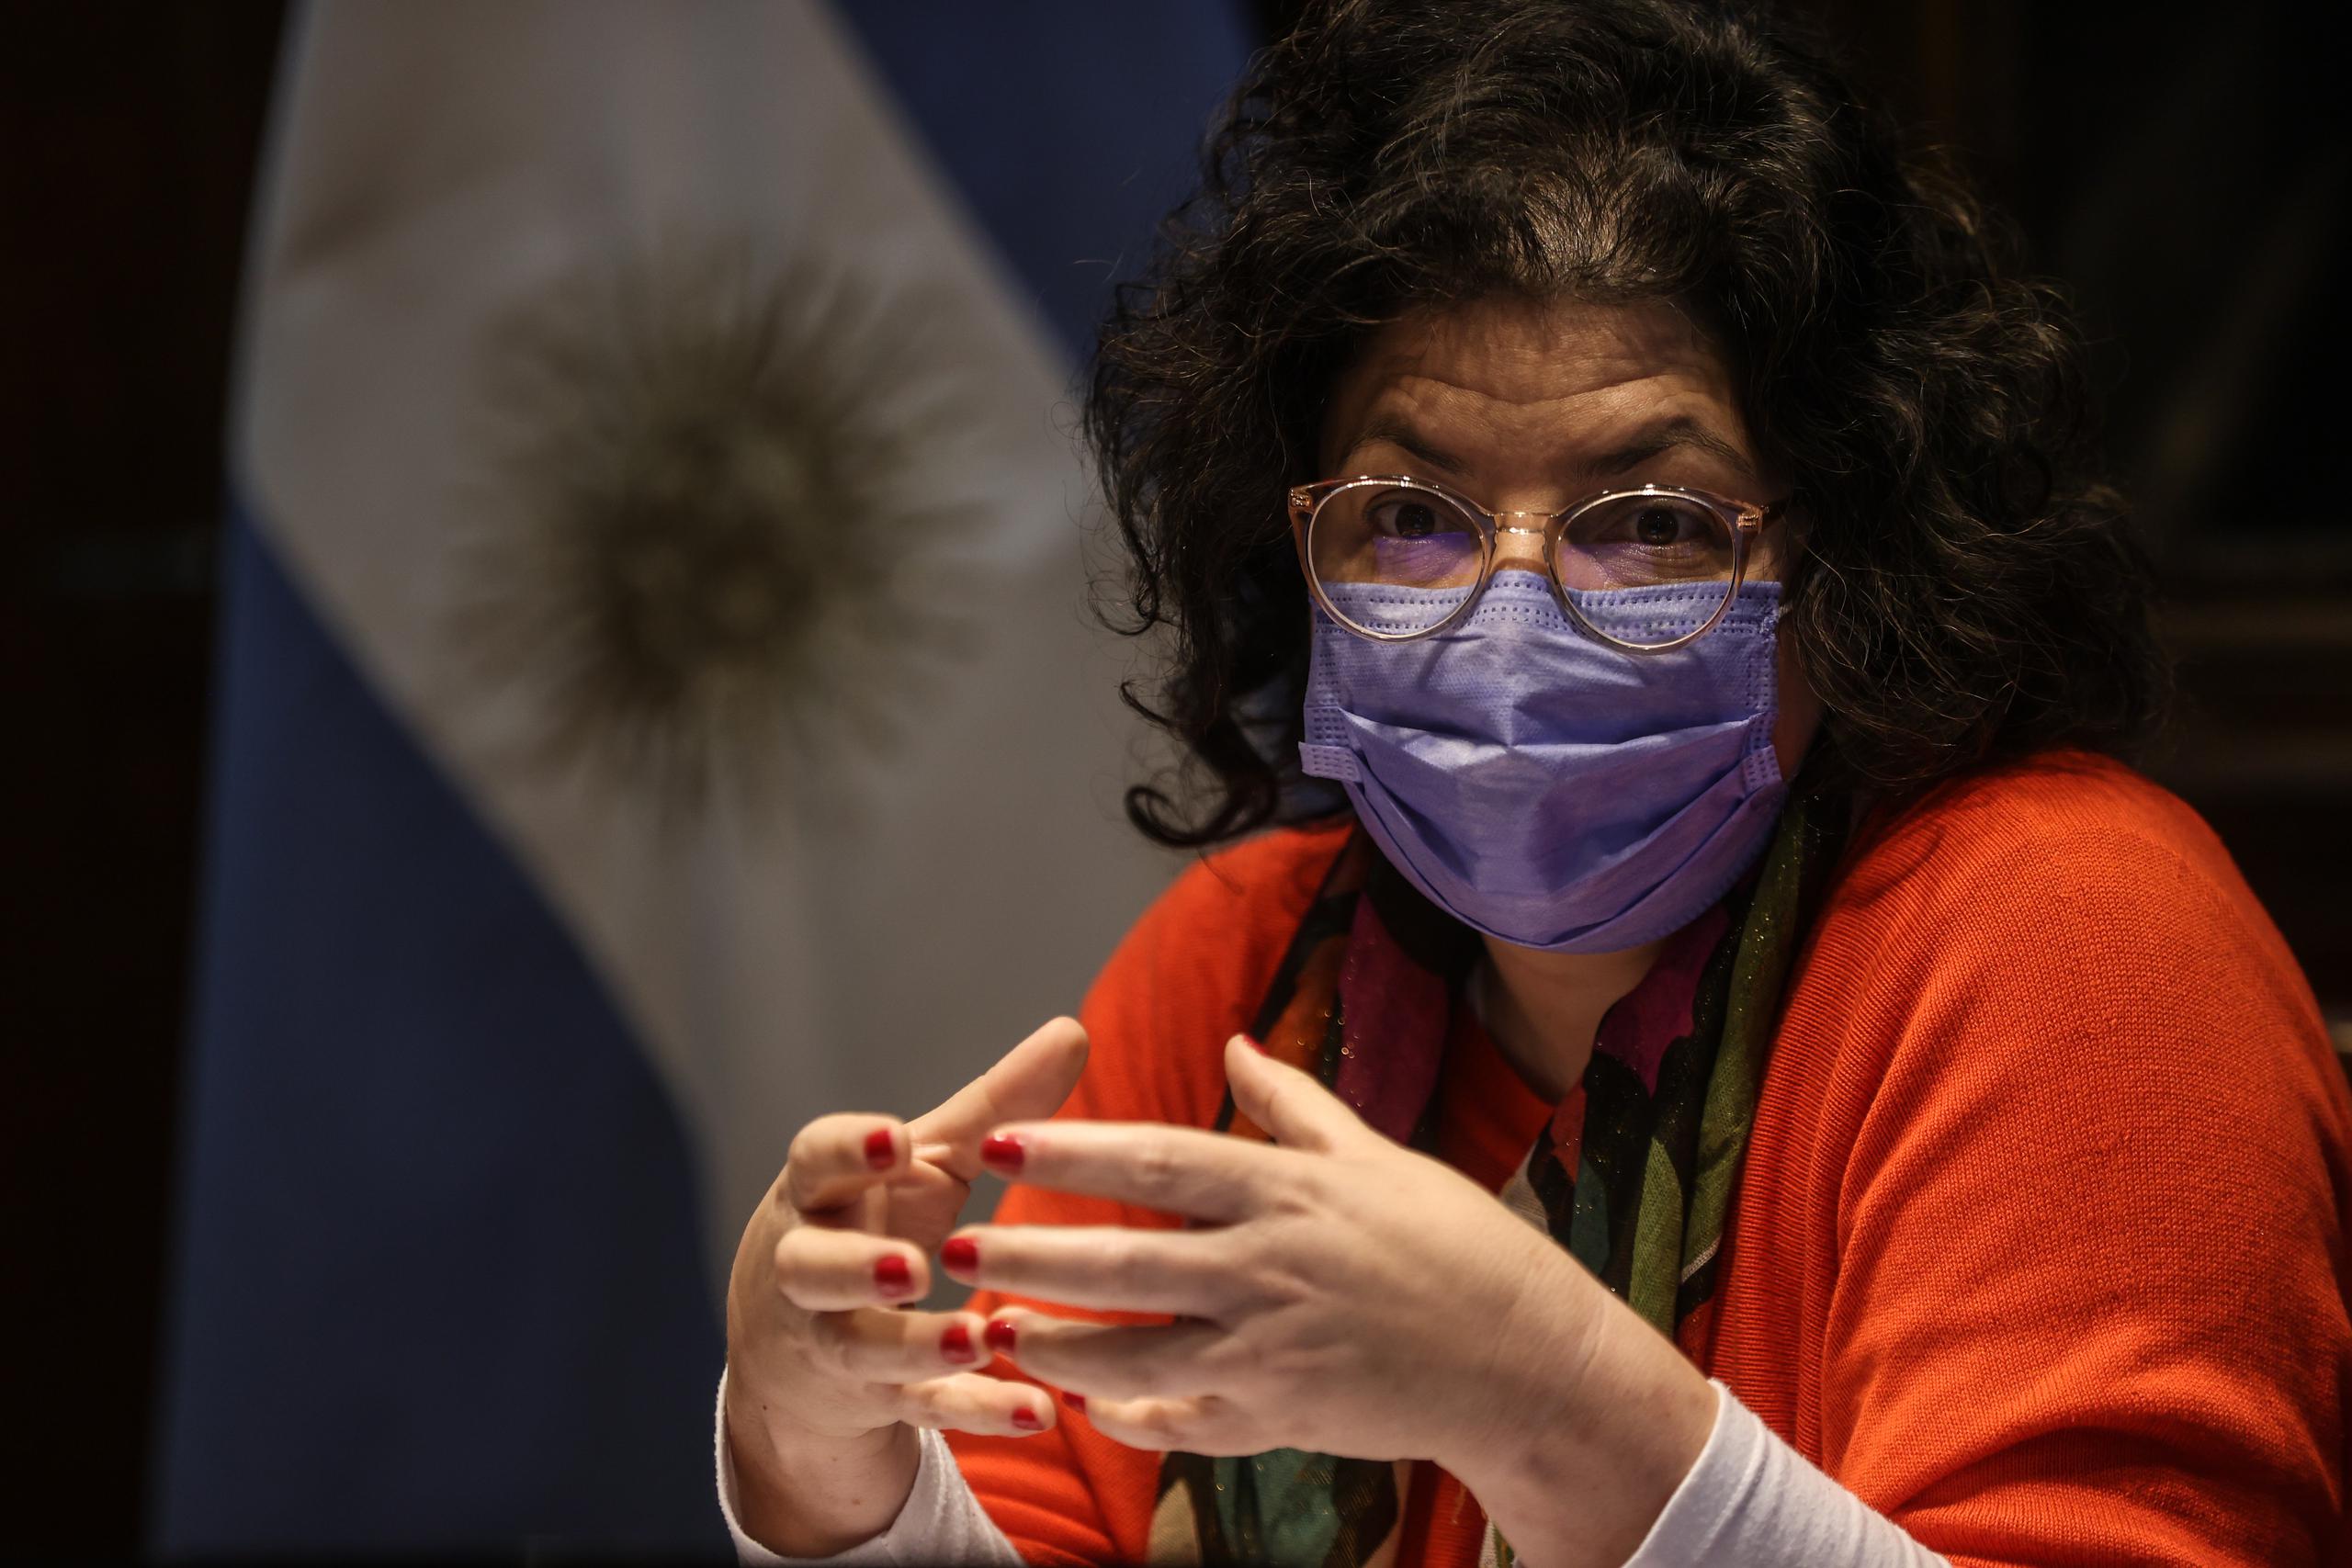 La ministra argentina de Salud, Carla Vizzotti, firmó la resolución en un acto realizado este lunes por cumplirse diez años de la sanción de la ley de Identidad de Género. (EFE/Juan Ignacio Roncoroni)